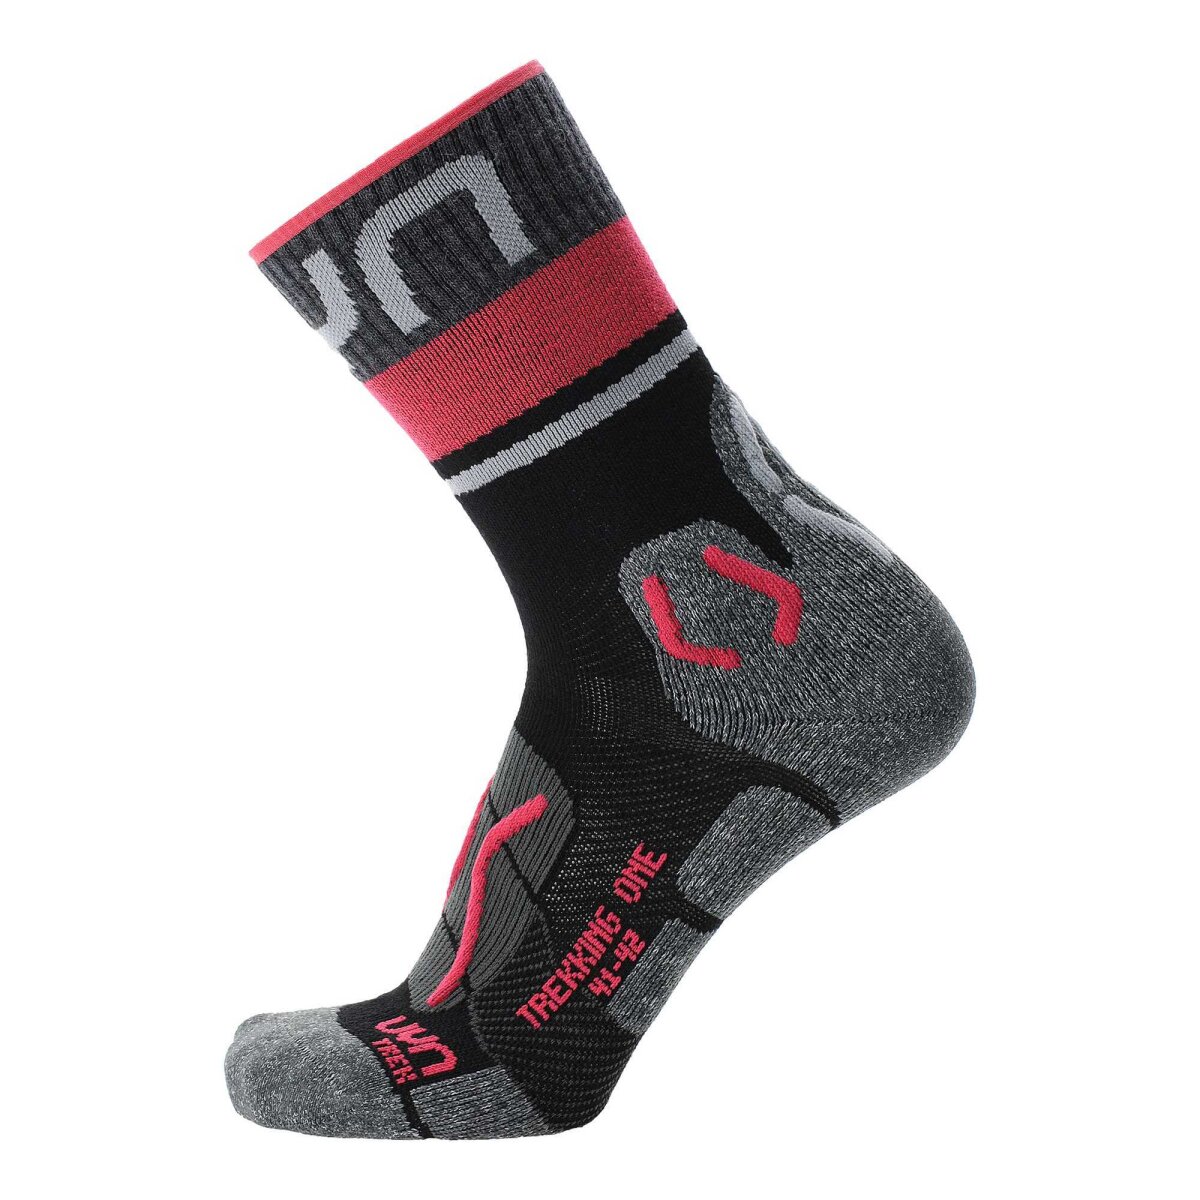 UYN Damen Trekking Socken - One Merino Socks, Wandersocken, Merino, L